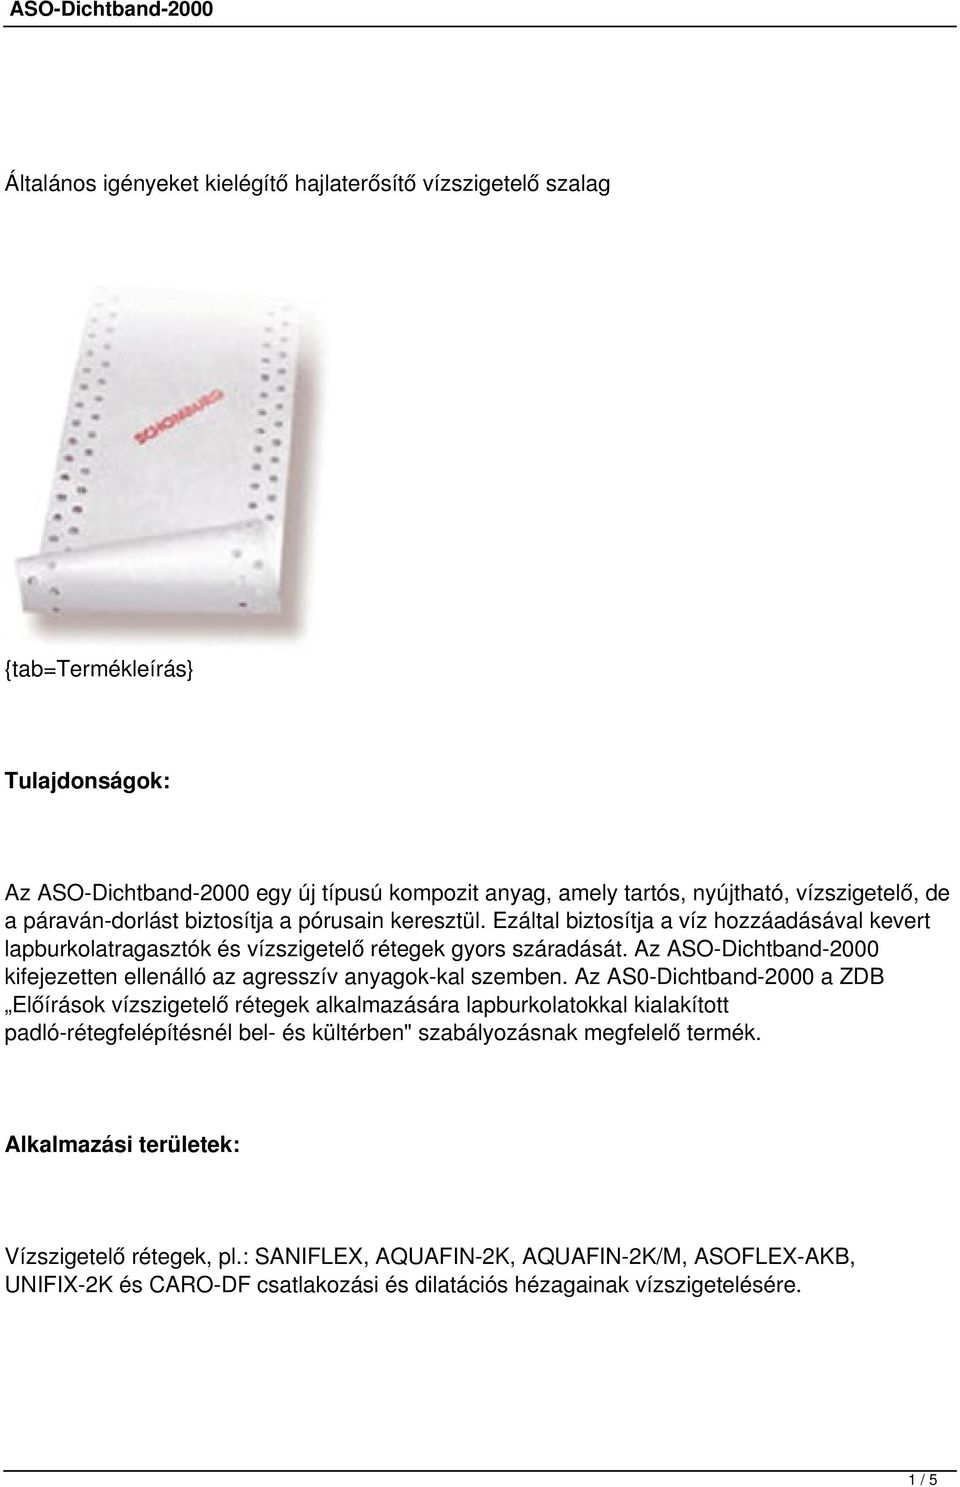 Az ASO-Dichtband-2000 kifejezetten ellenálló az agresszív anyagok kal szemben.